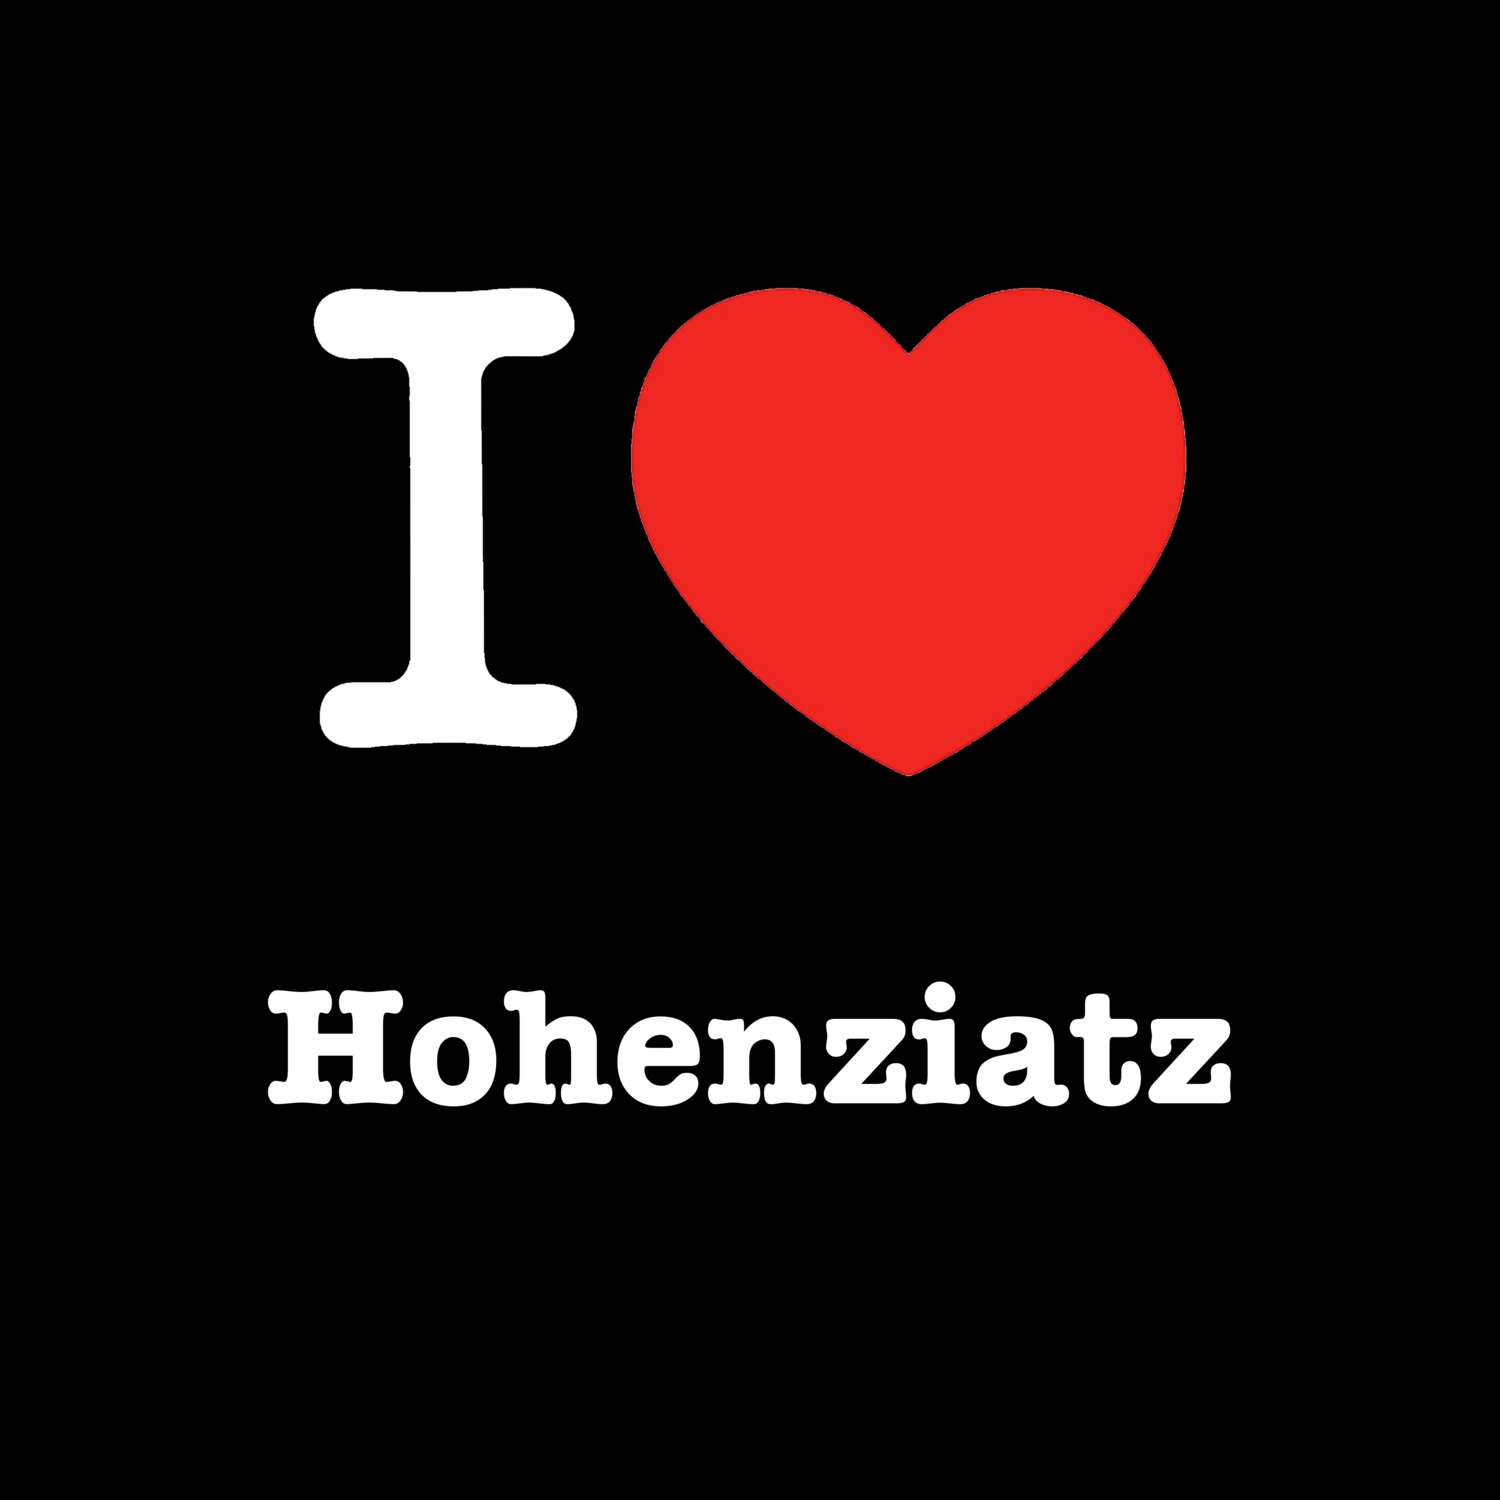 Hohenziatz T-Shirt »I love«